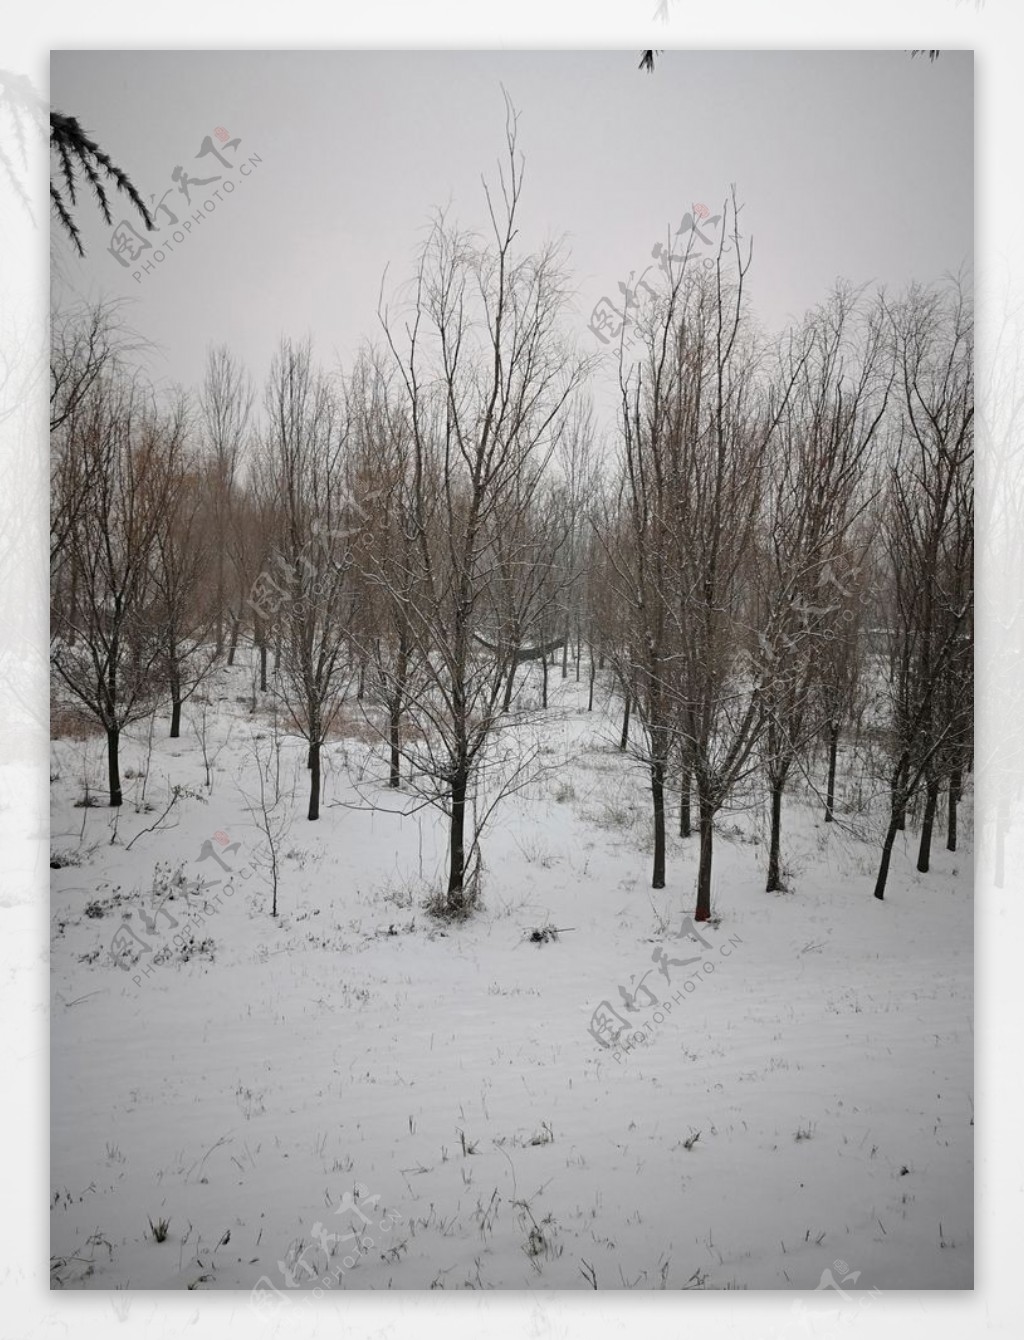 雪景照片雪景素材